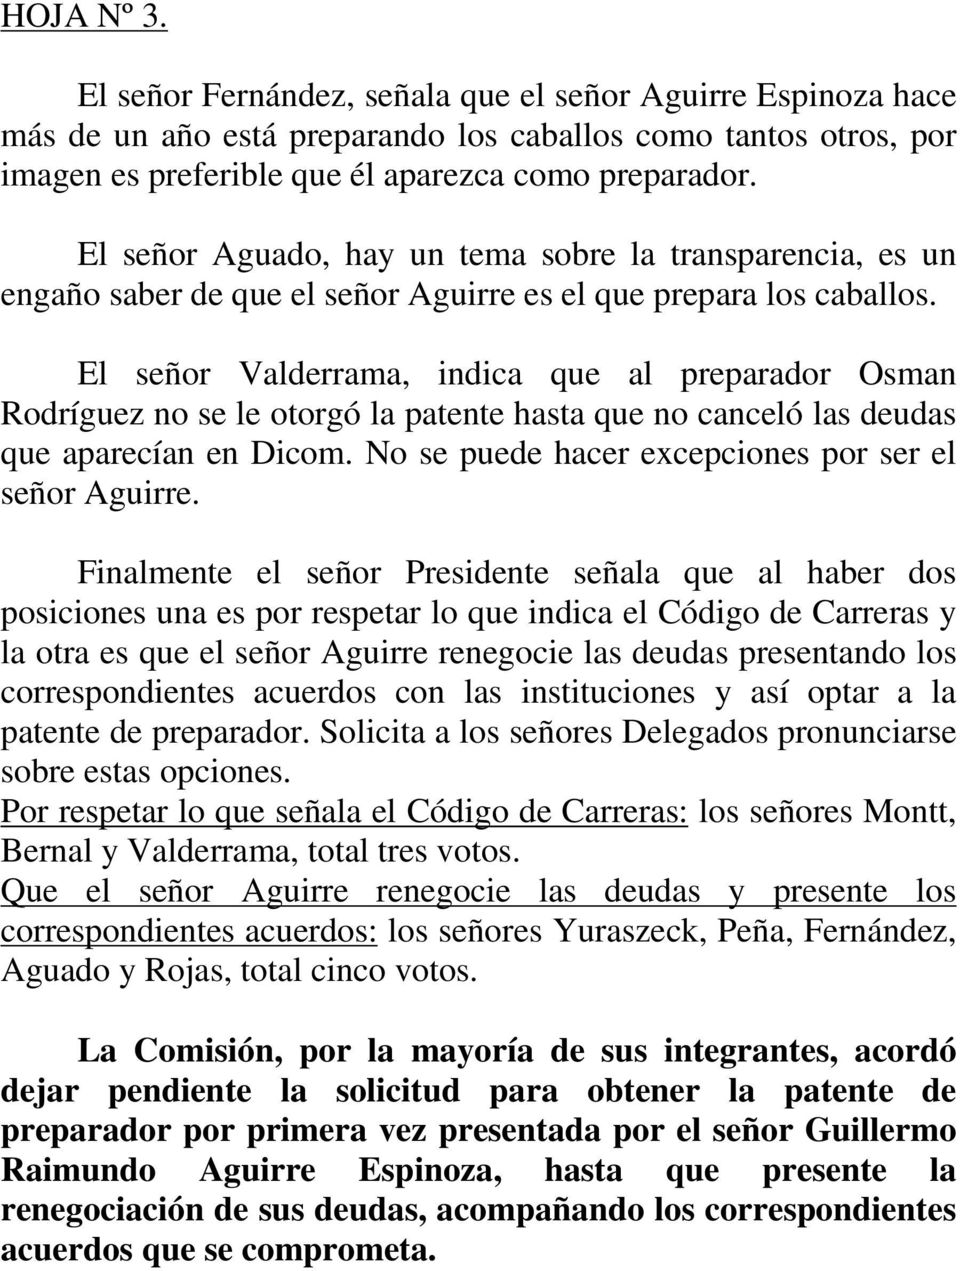 El señor Valderrama, indica que al preparador Osman Rodríguez no se le otorgó la patente hasta que no canceló las deudas que aparecían en Dicom. No se puede hacer excepciones por ser el señor Aguirre.